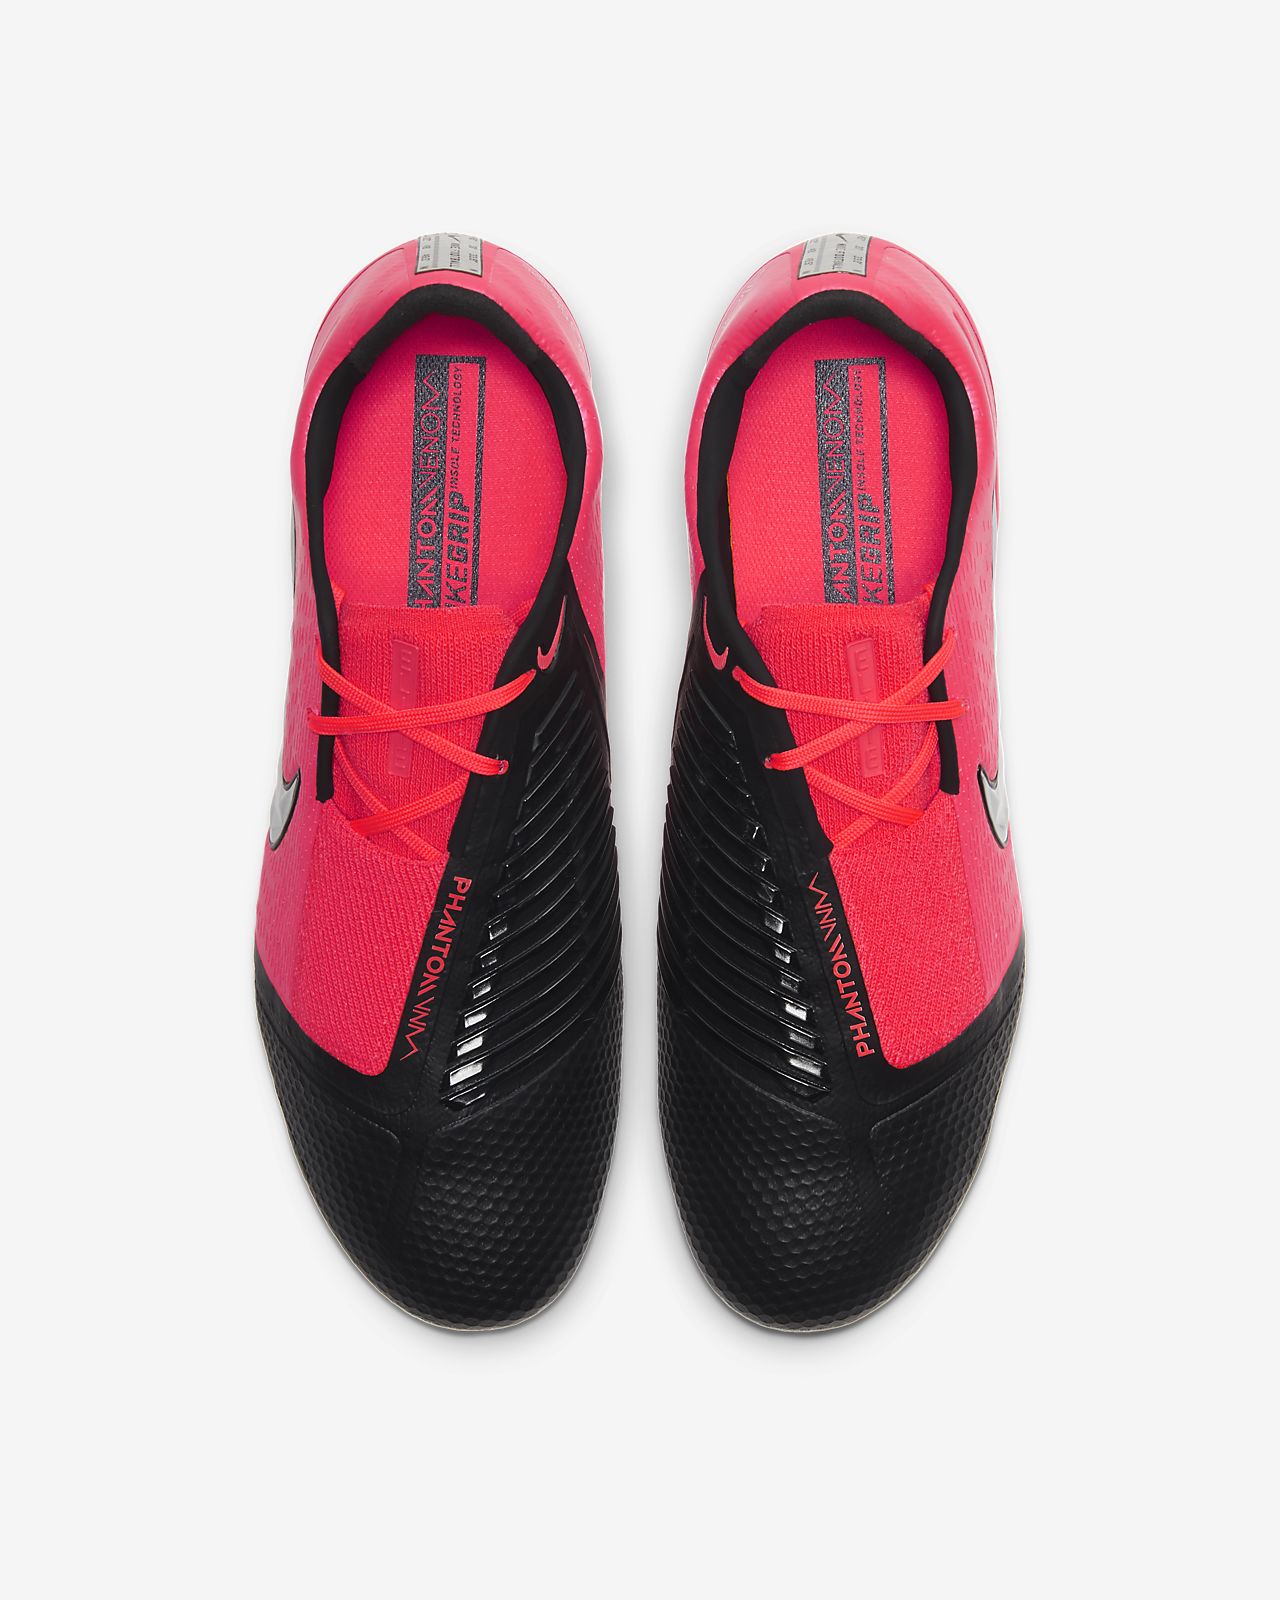 Nike Phantom Venom Pro Fg Football Shoes AO8738 606 